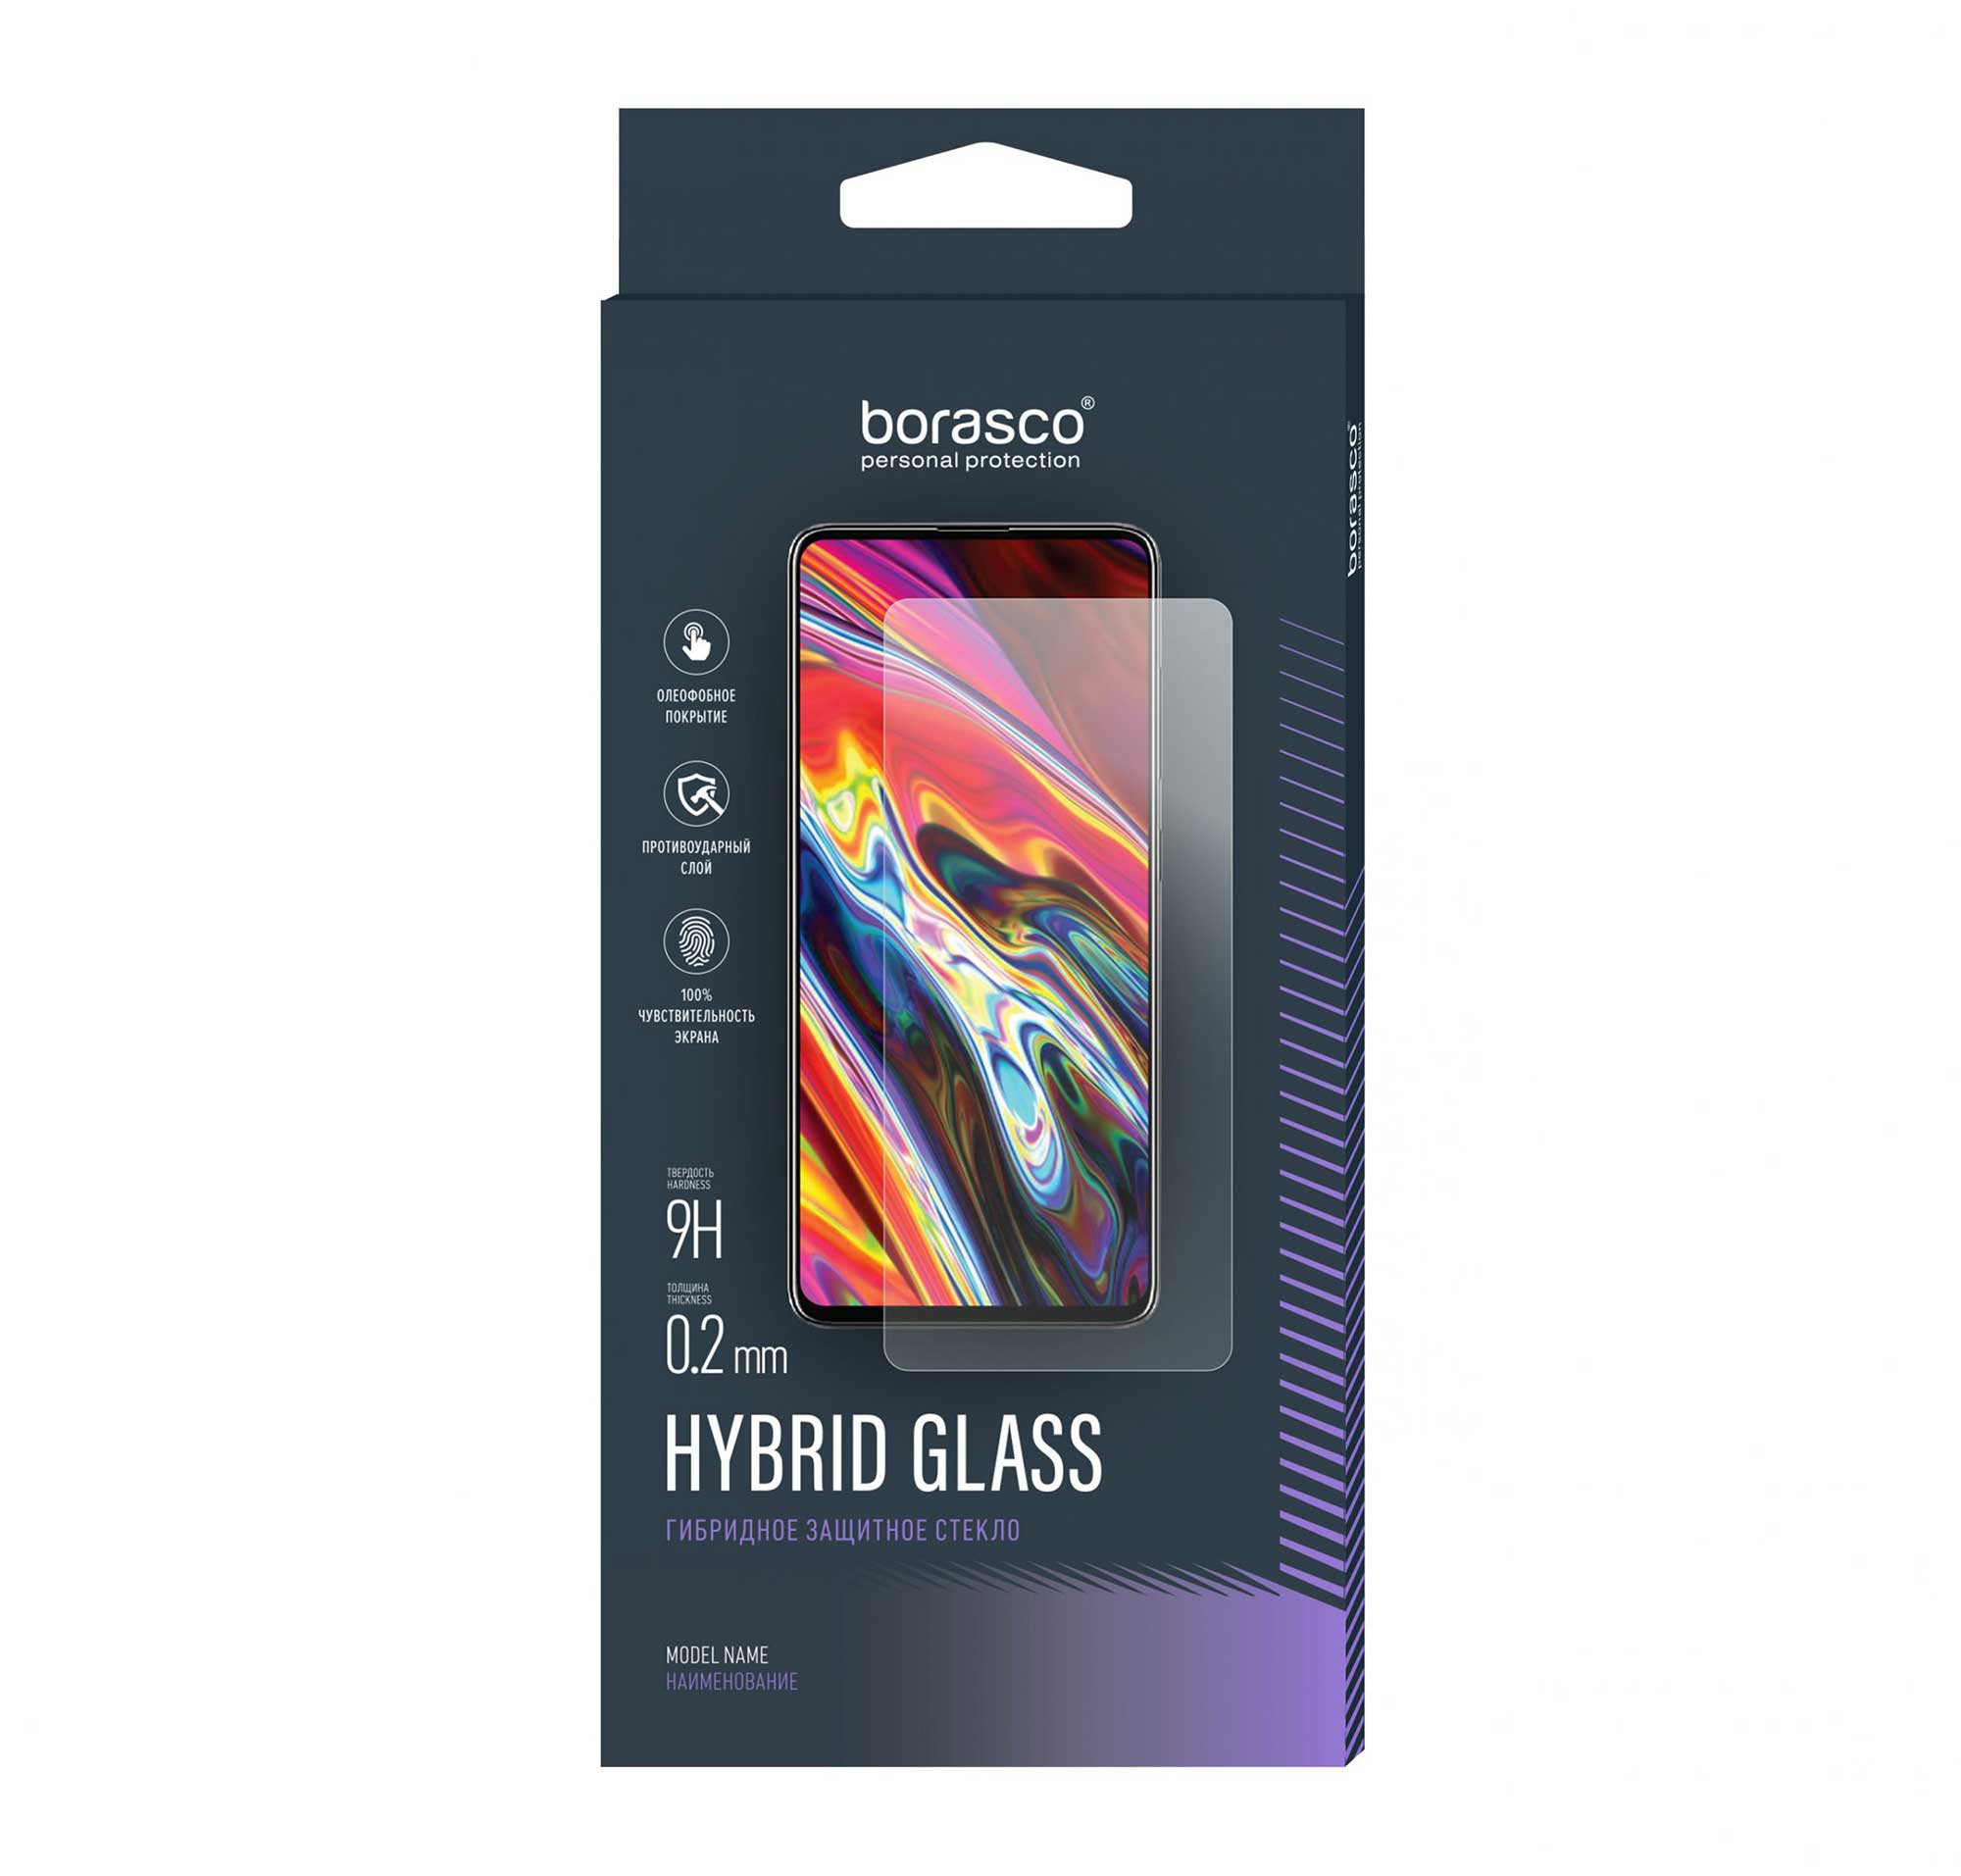 Защитное стекло Hybrid Glass для Poco X3 защитное стекло mobix для poco x3 x3 nfc поко х3 со светящейся рамкой